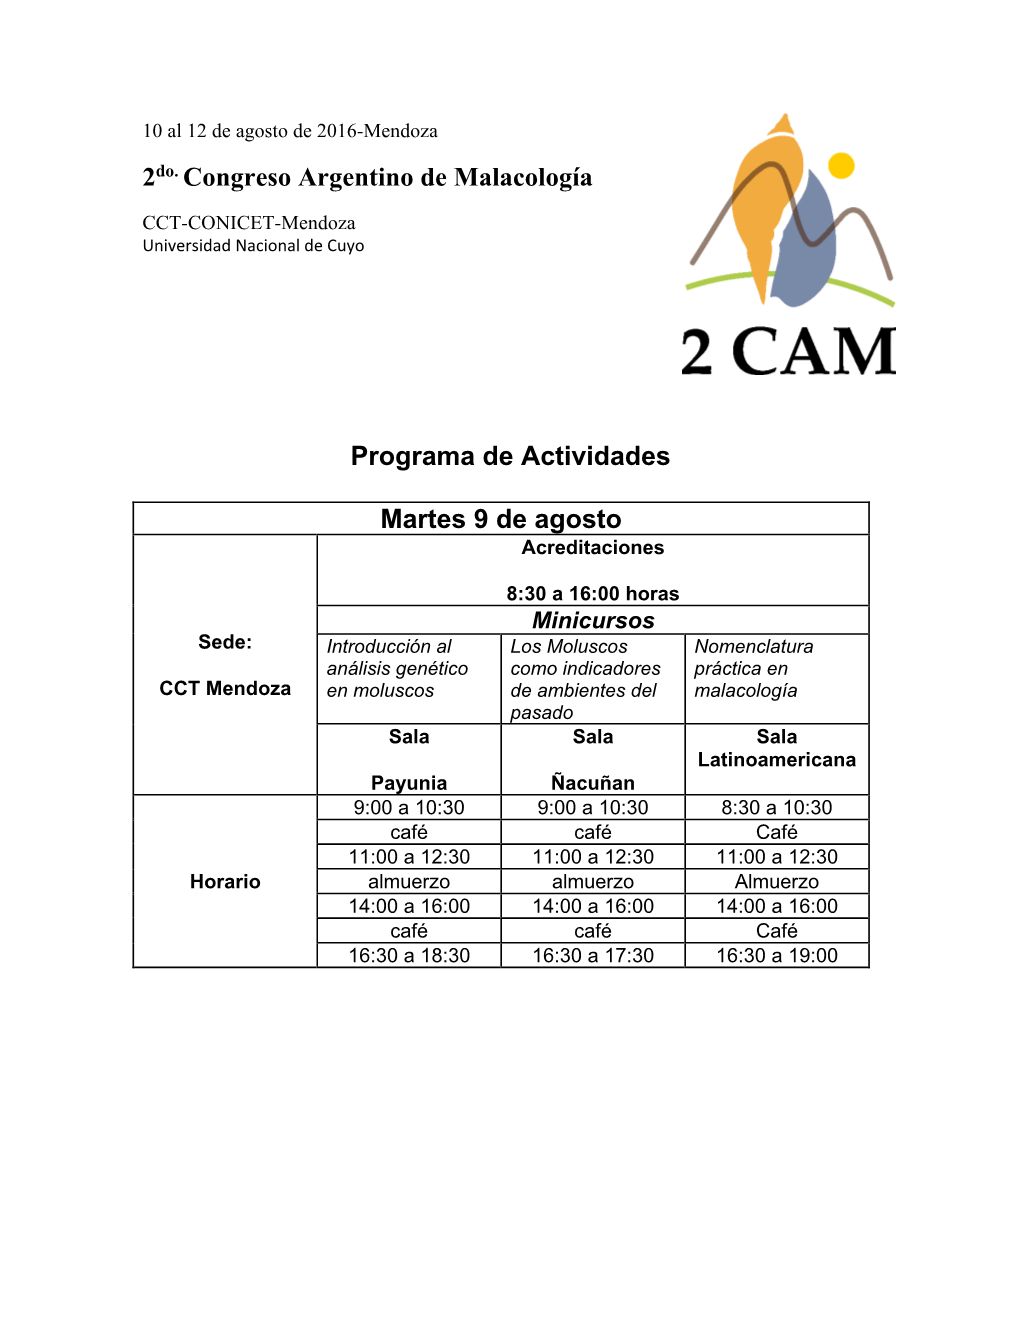 2Do. Congreso Argentino De Malacología Programa De